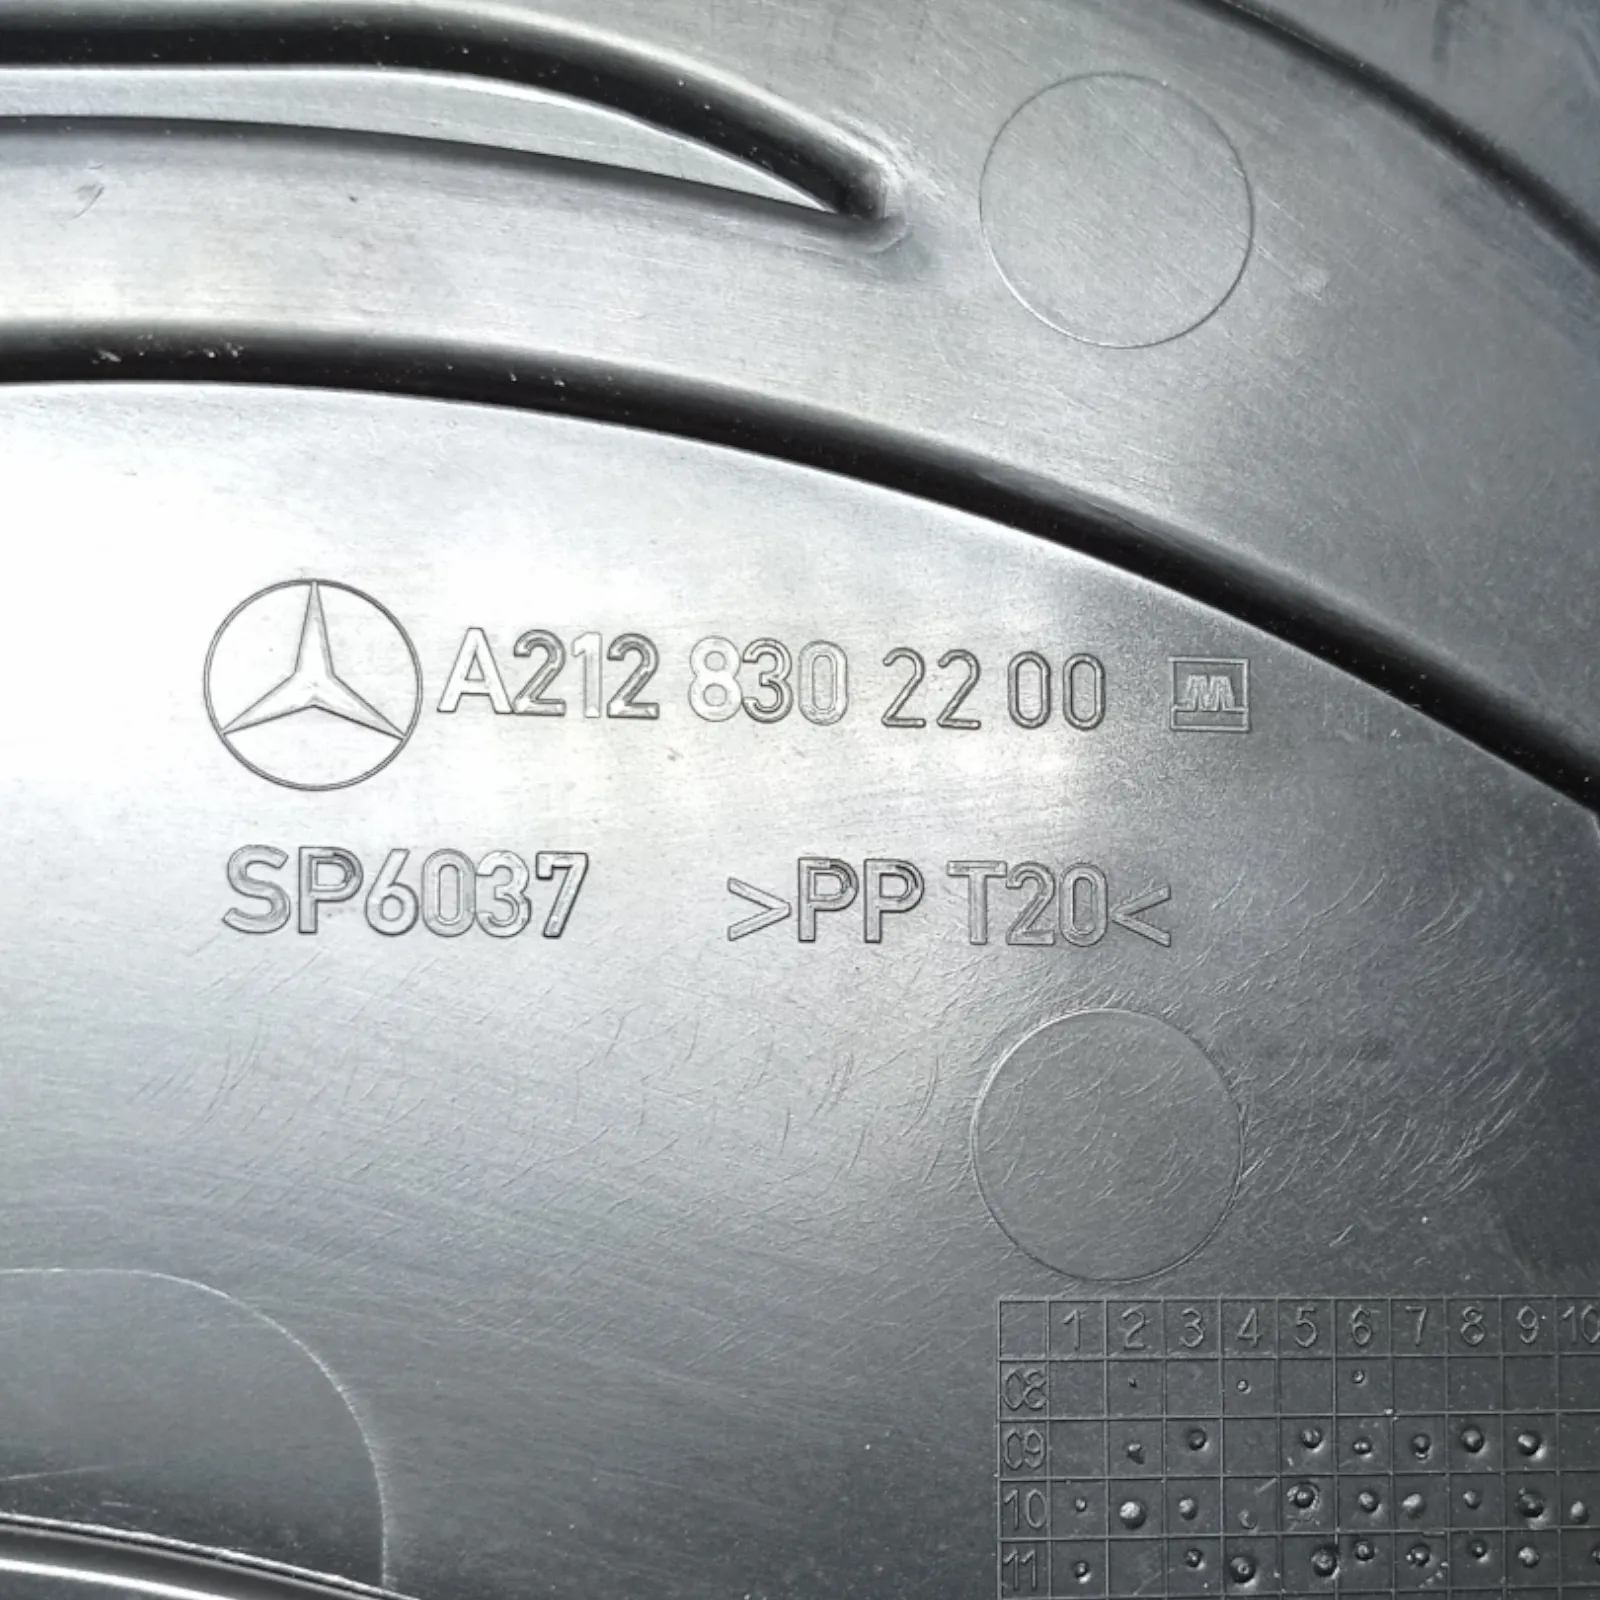 Корпус за разпределение на въздуха Mercedes E-class W212 (2009-2013)-[A 212 830 22 00] 3